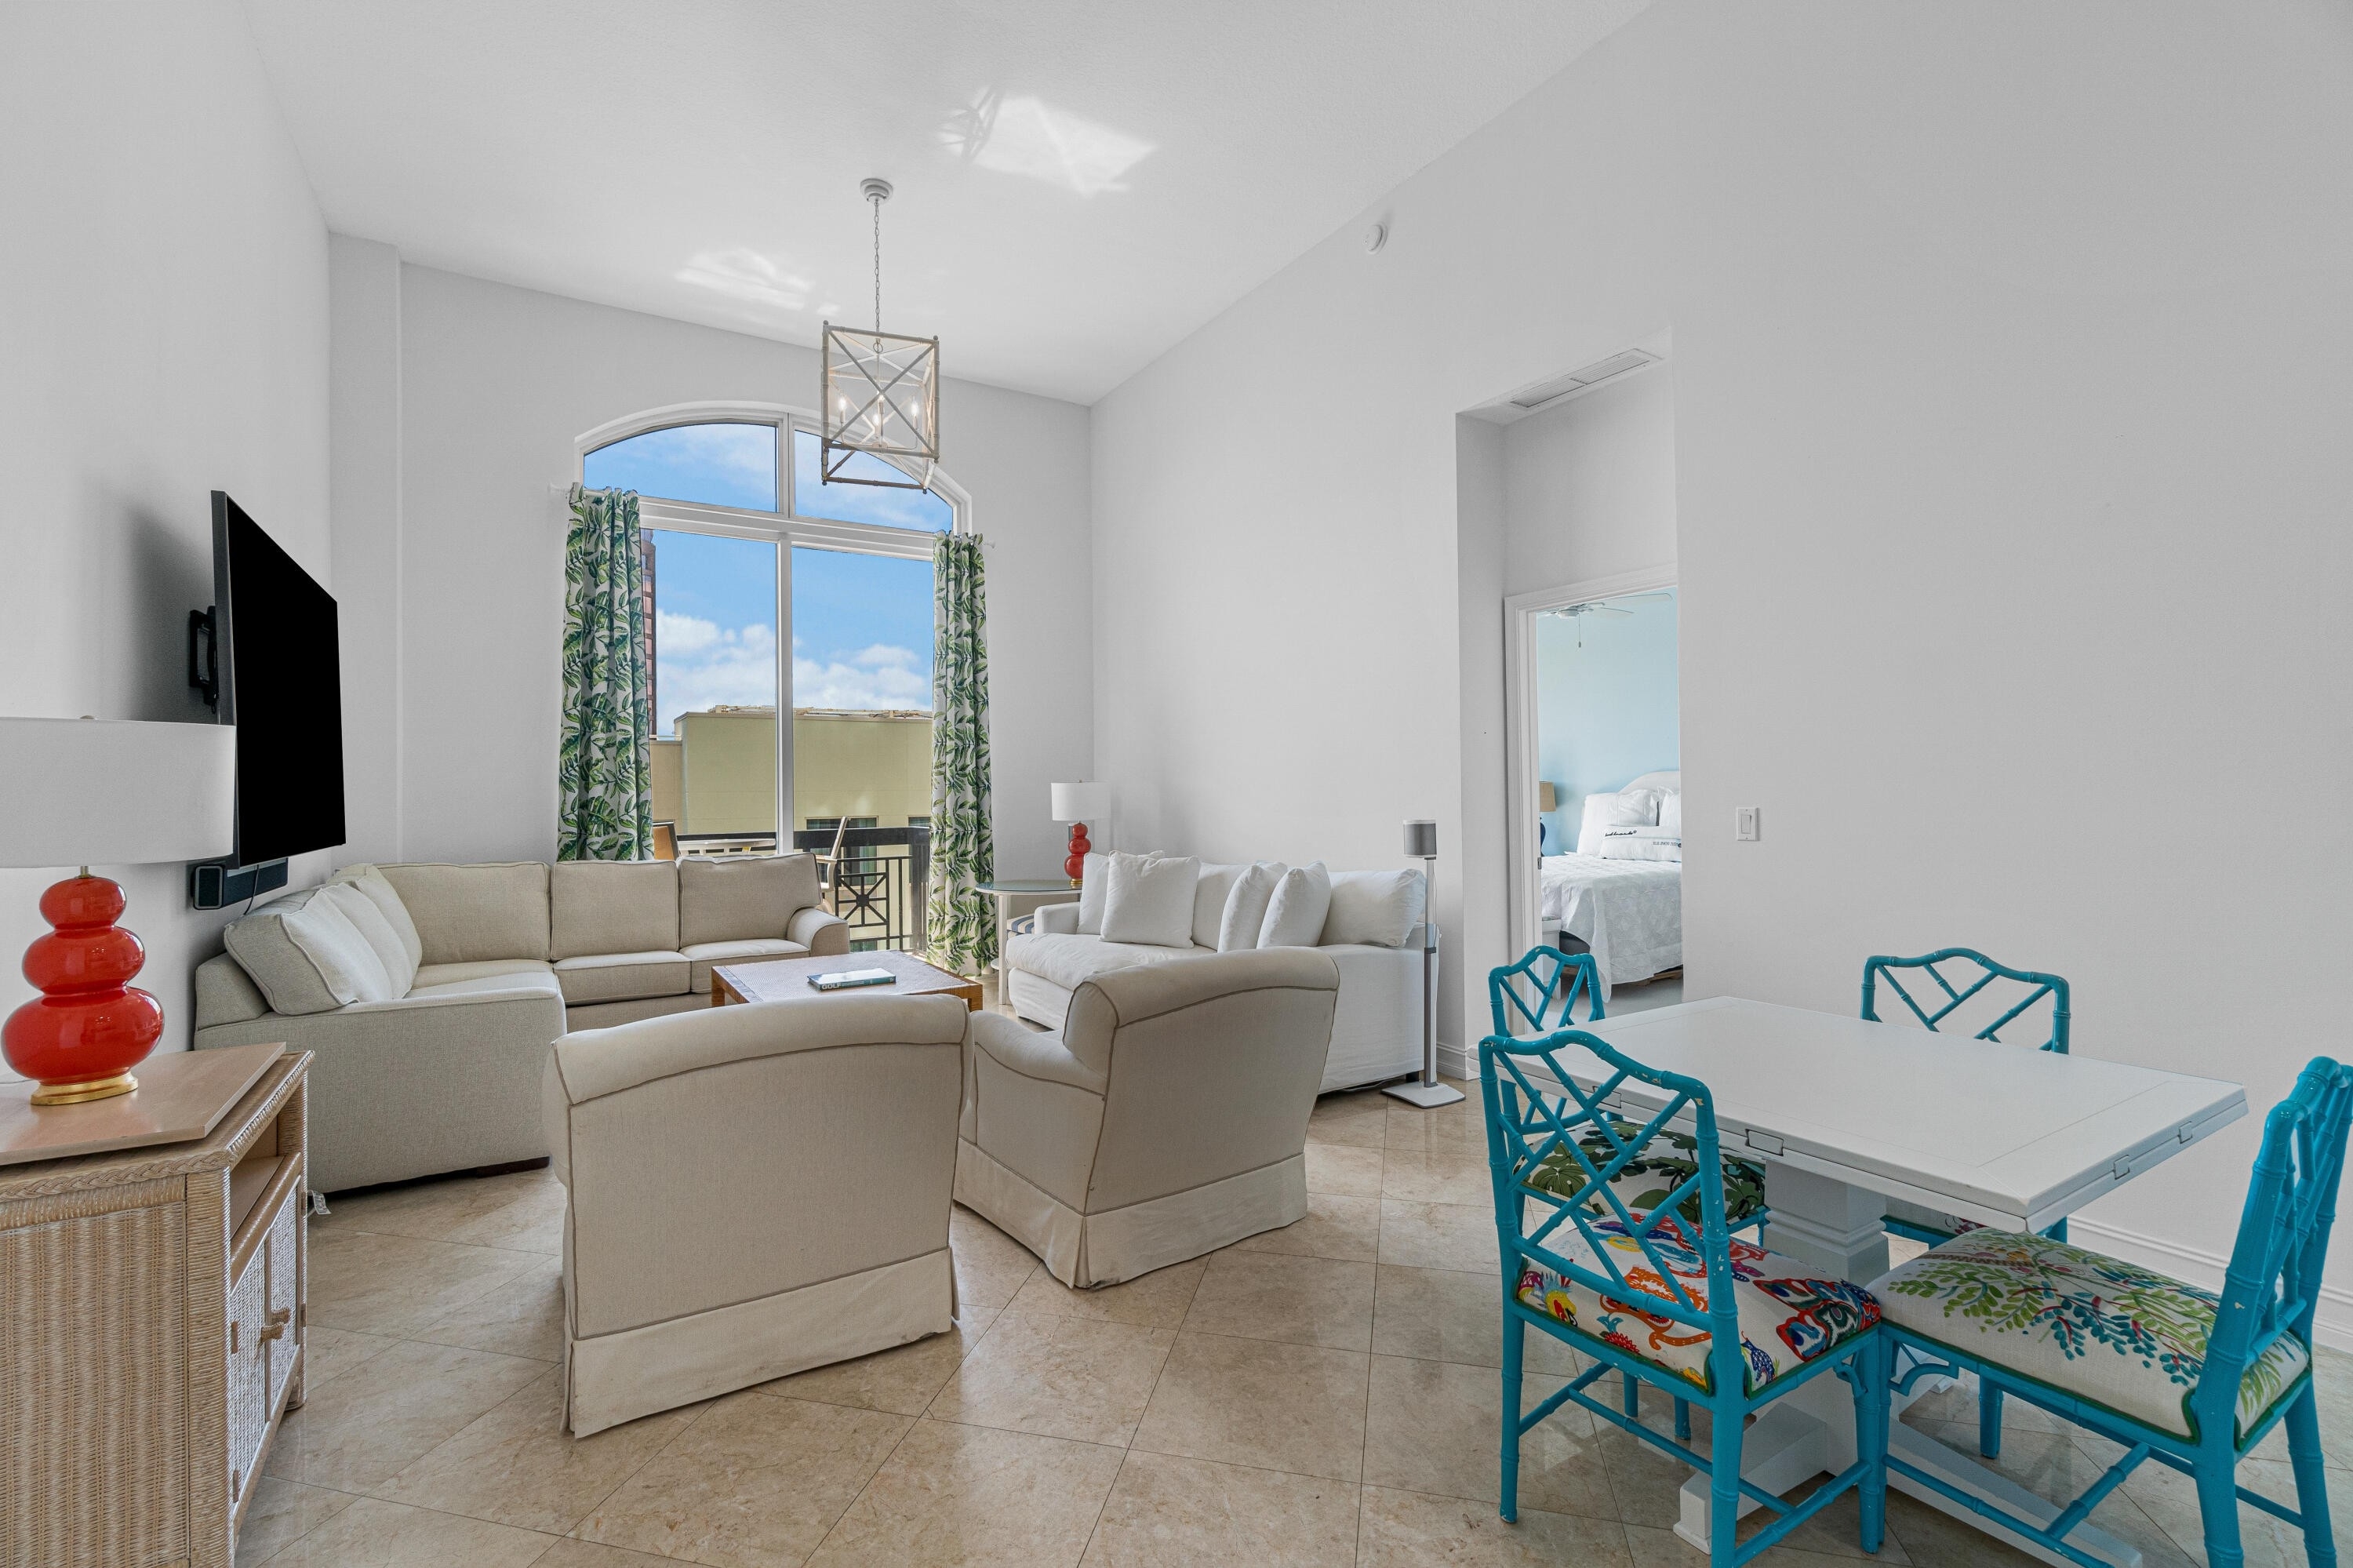 Condominium at 701 S Olive Avenue, 412 Quadrille Garden District, West Palm Beach, FL 33401